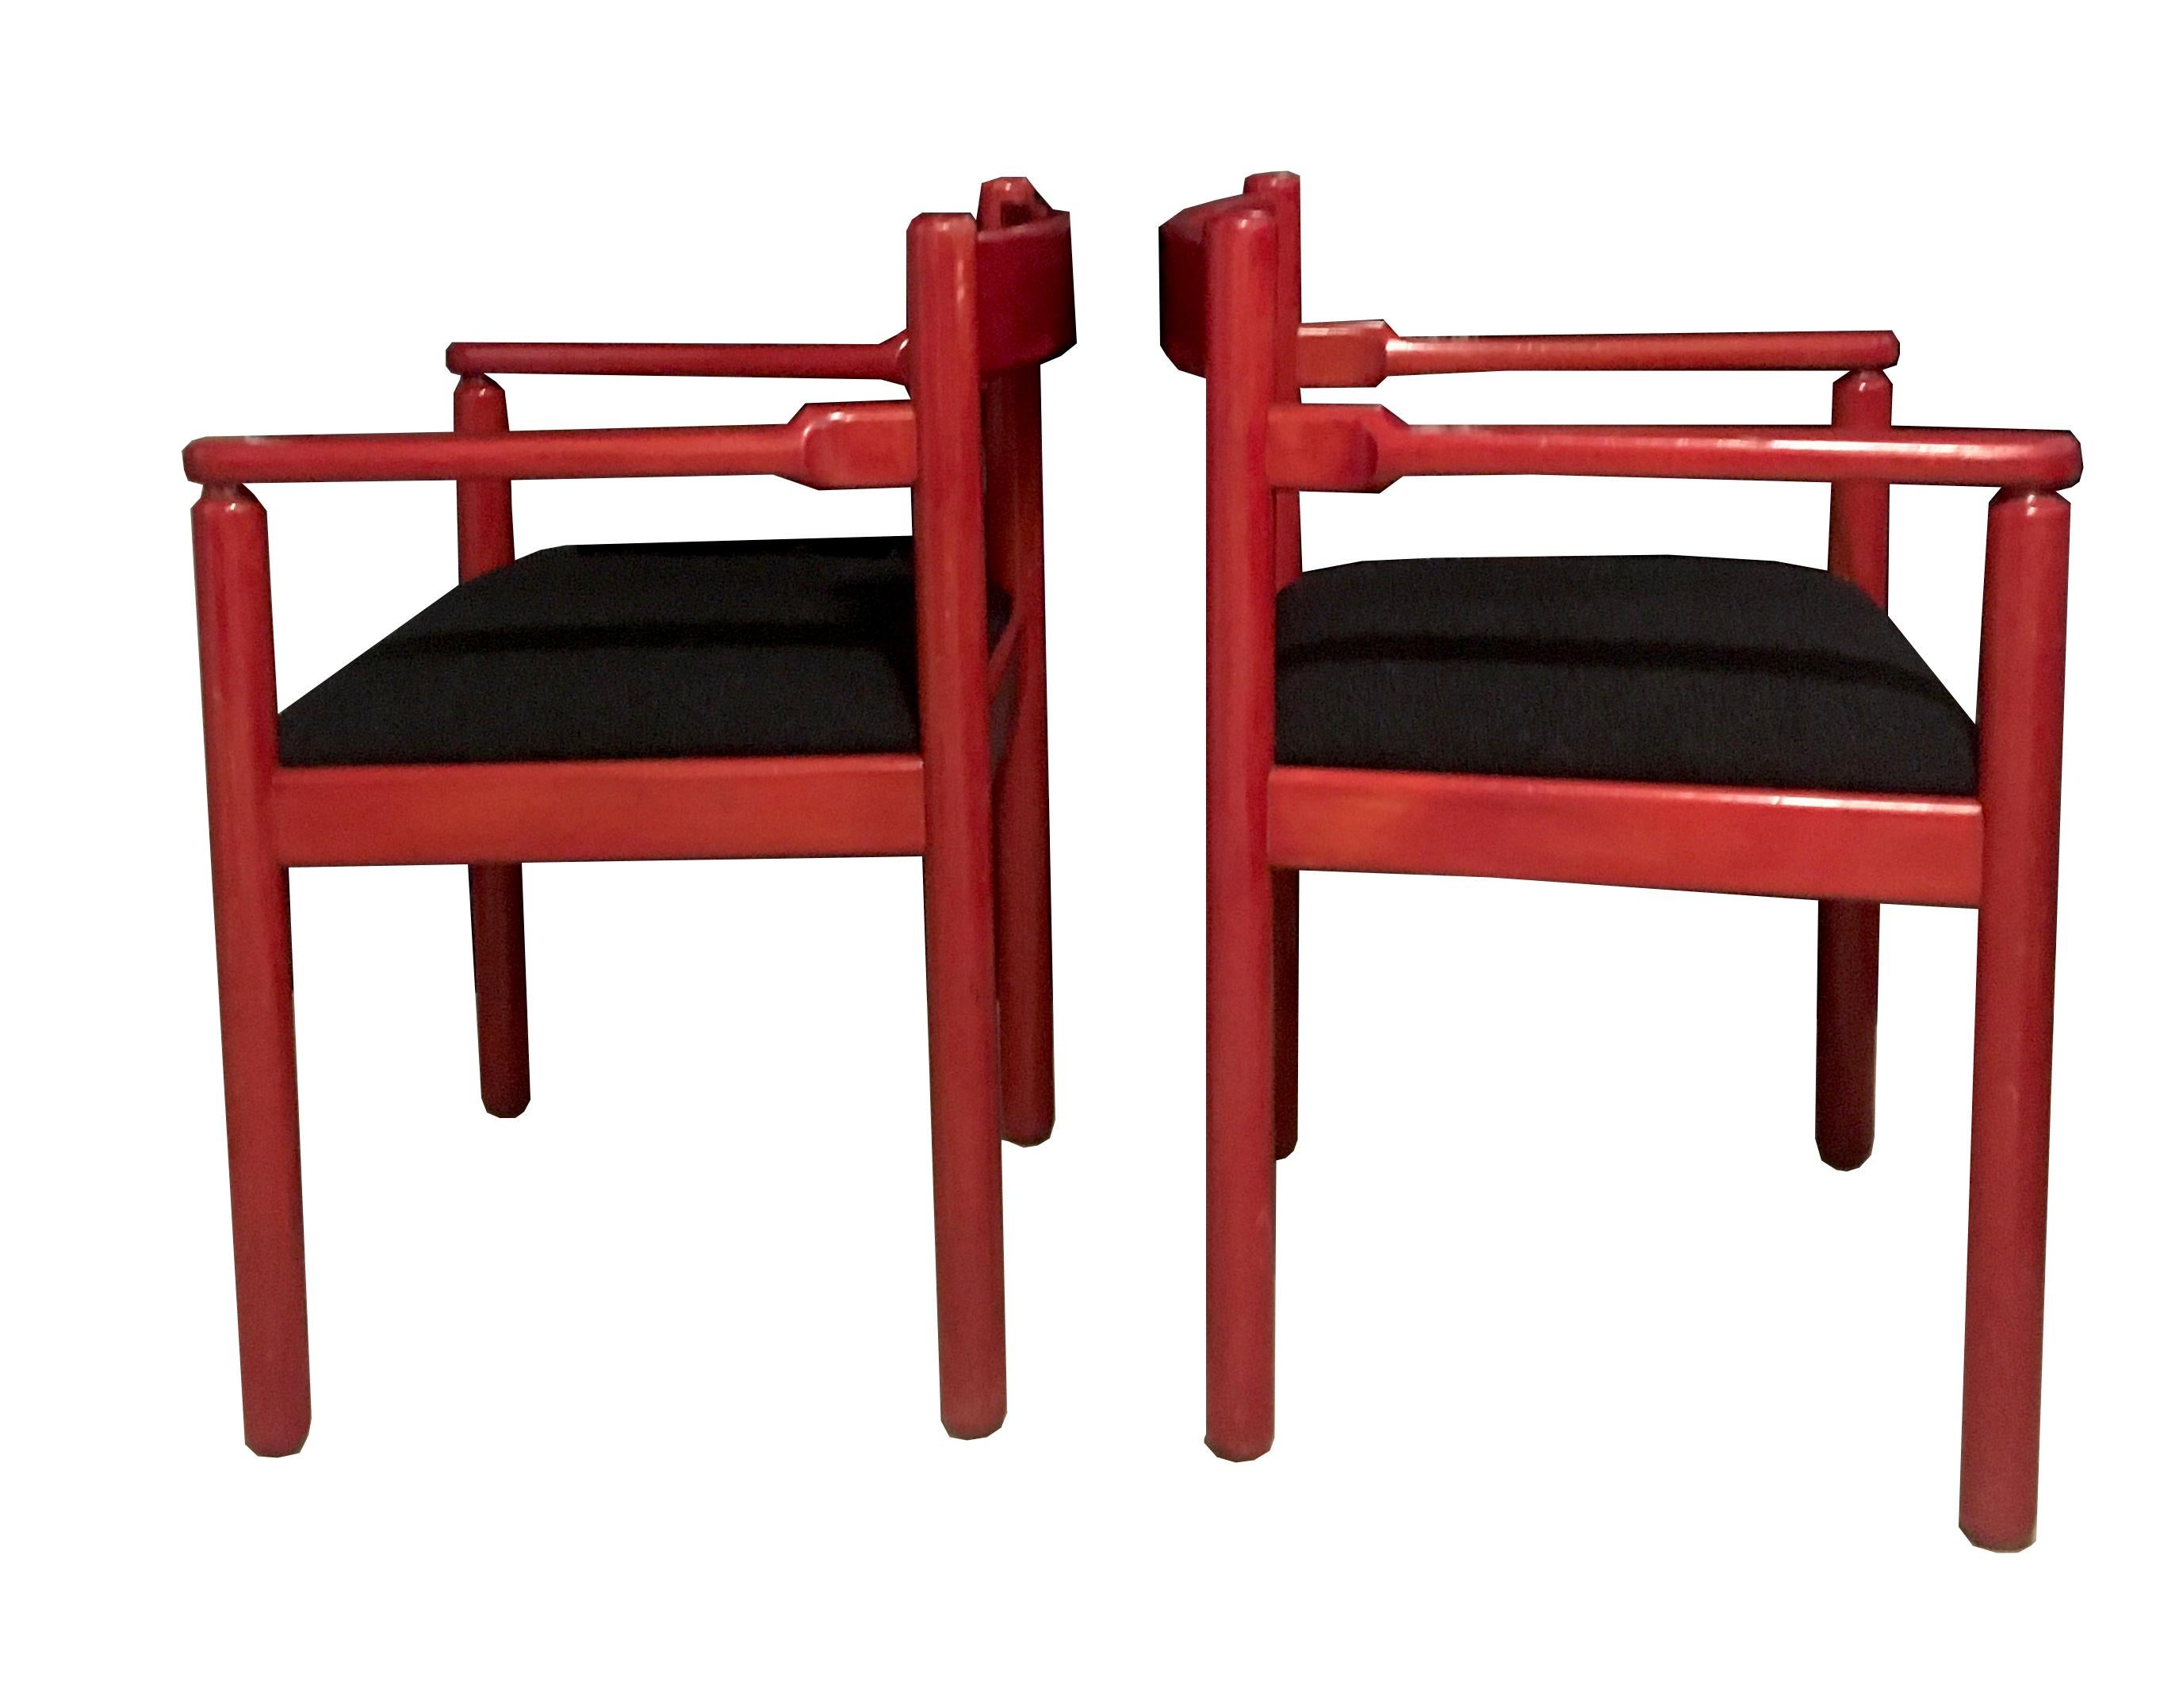 Paire de chaises de salle à manger conçues par Vico Magistretti pour la manufacture Cassina en 1964, Italie.
Assise en tissu noir et structure en bois laqué rouge.